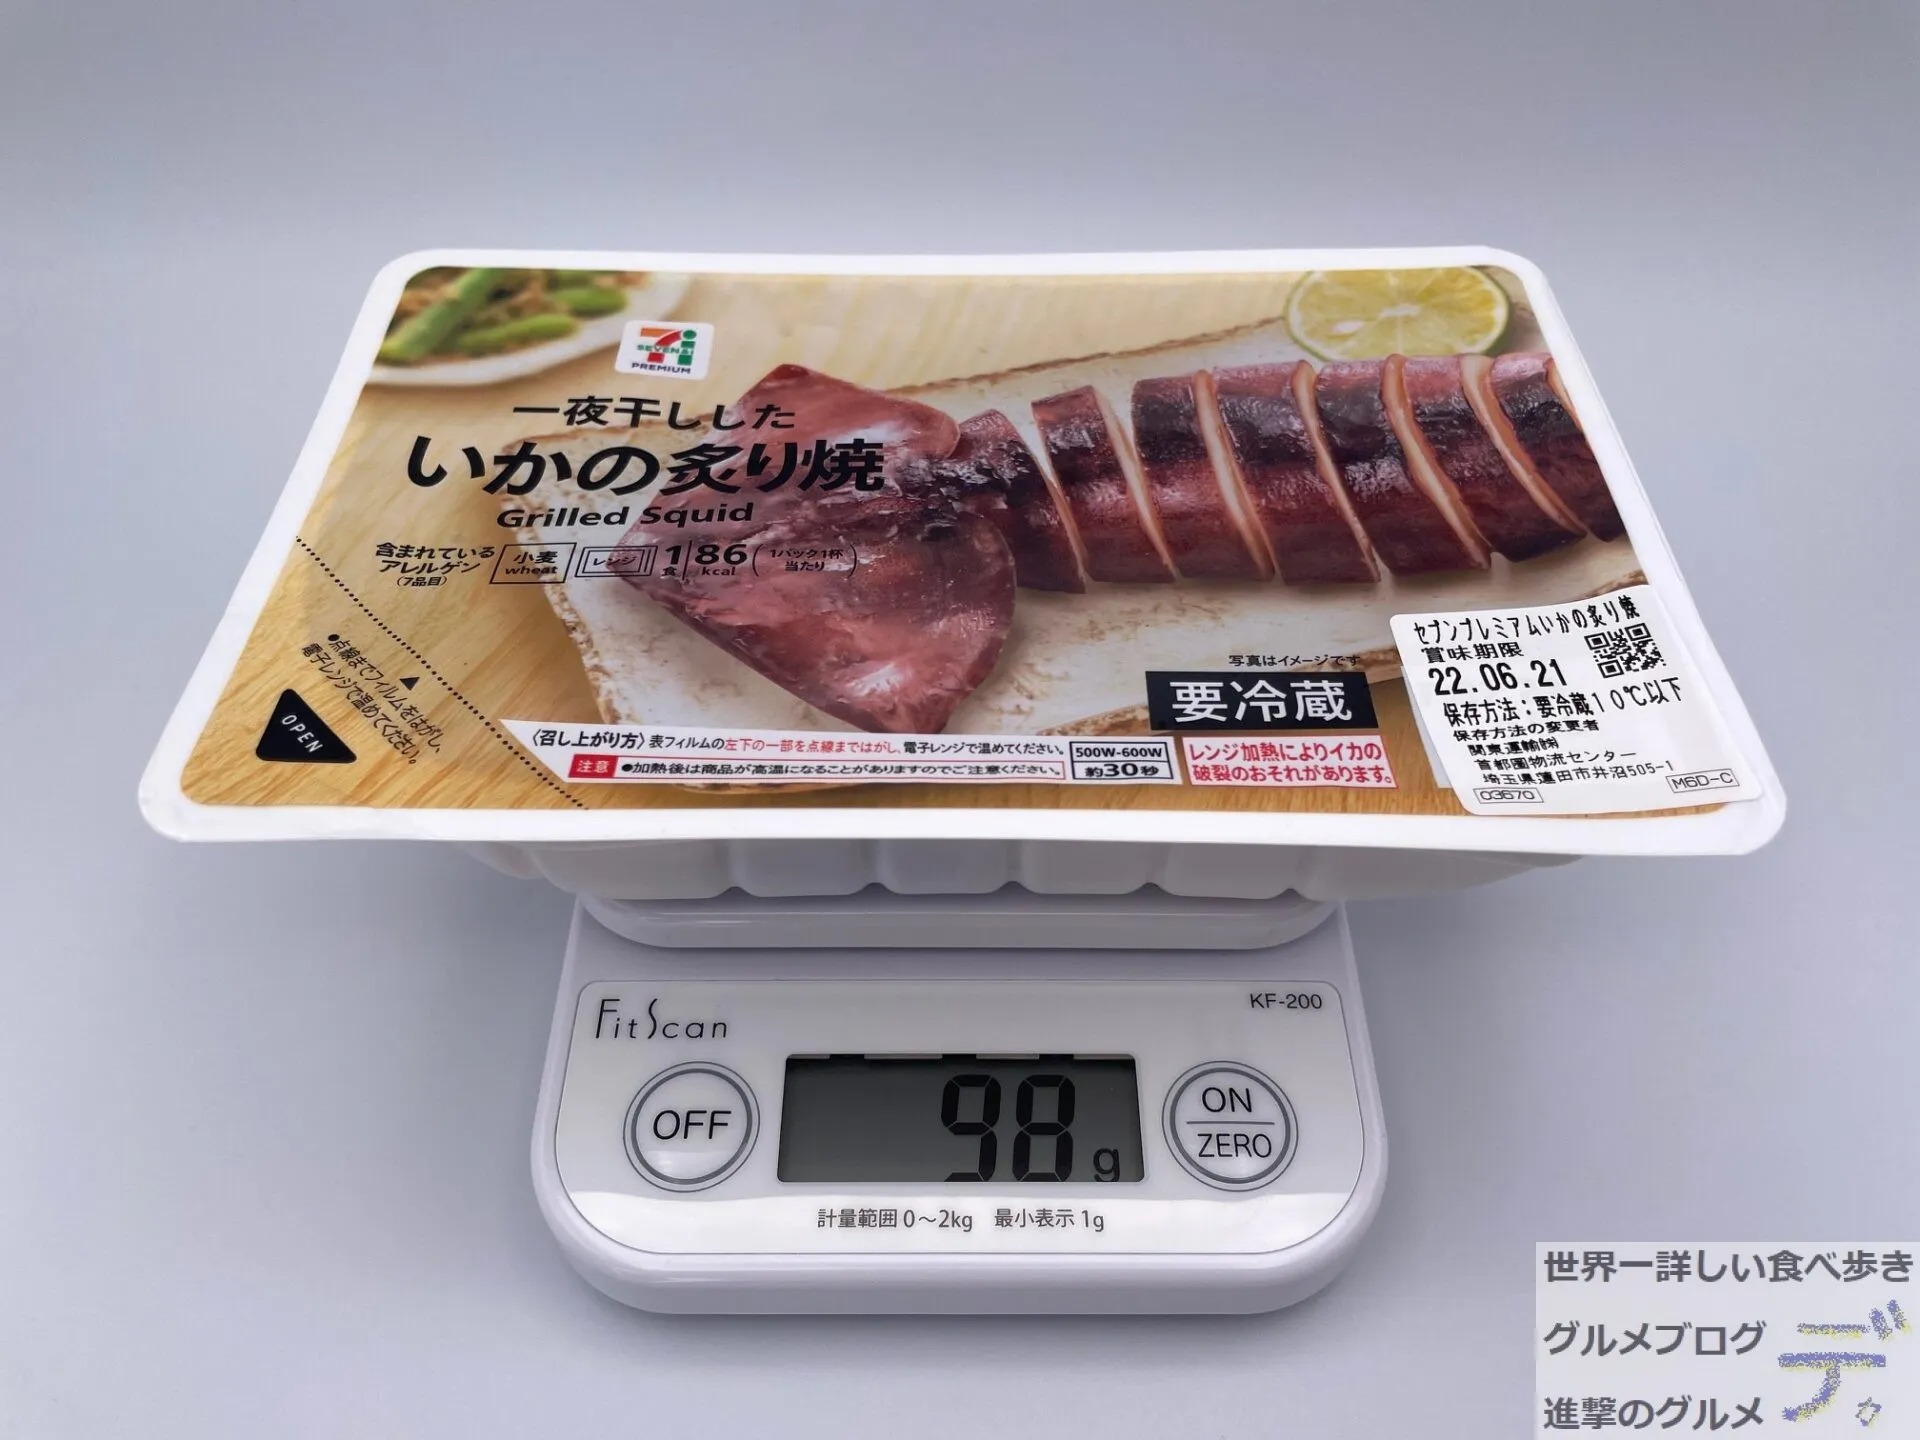 セブン-イレブン「７プレミアム いかの炙り焼き」を実食レポ - 進撃のグルメ | Yahoo! JAPAN クリエイターズプログラム